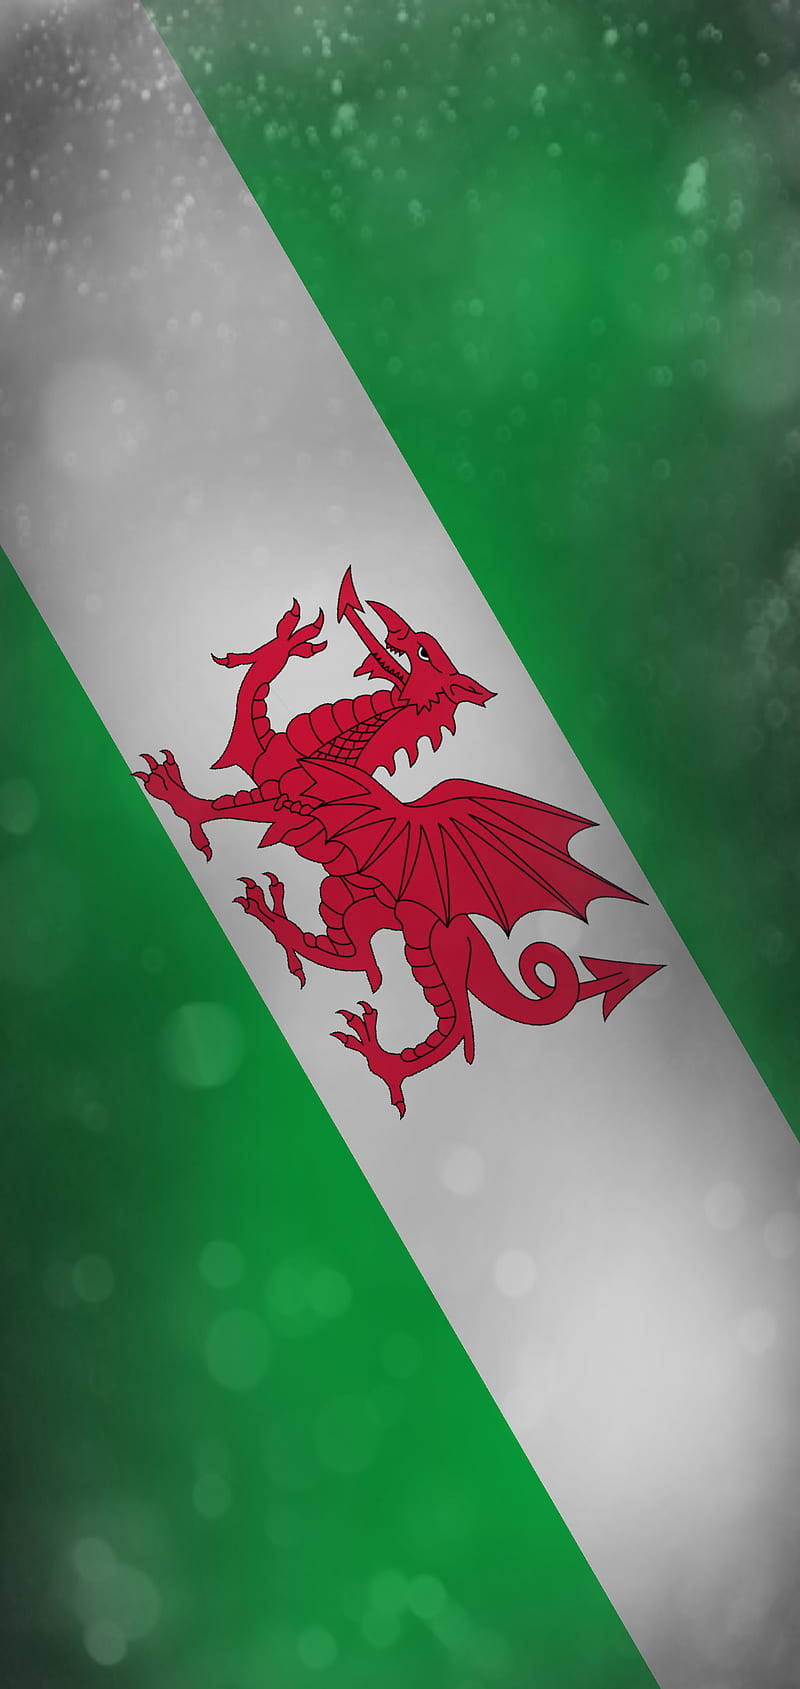 Banderade Diagonal Del Equipo Nacional De Fútbol De Gales En Retrato Fondo de pantalla